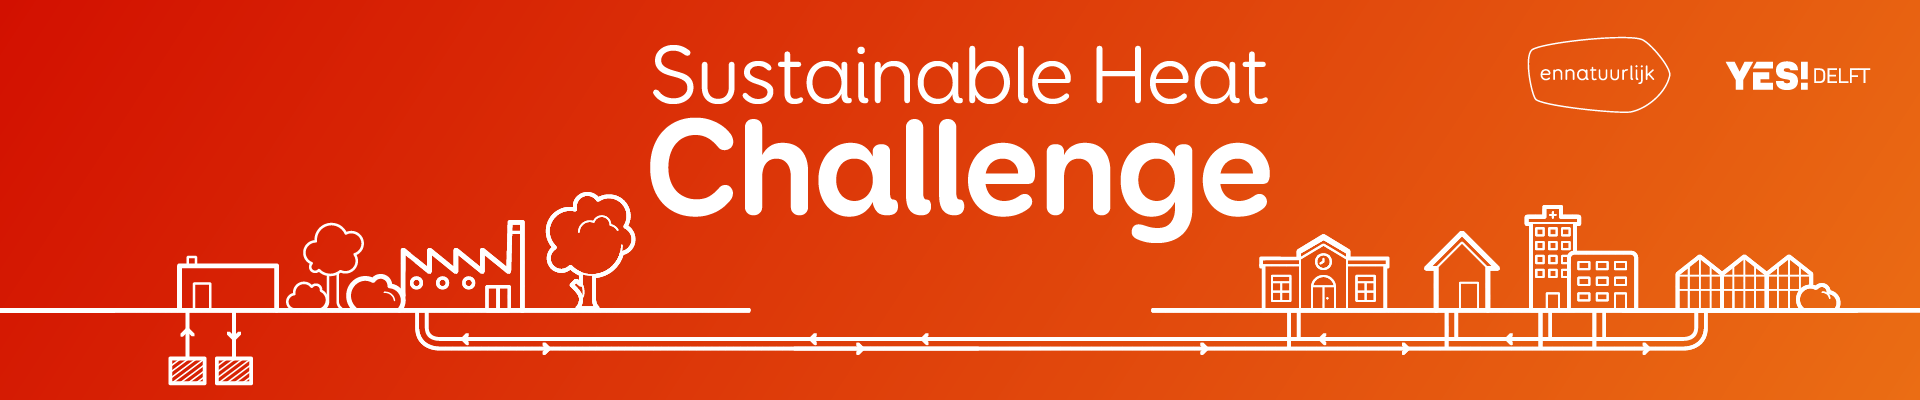 Ennatuurlijk Sustainable Heat Challenge